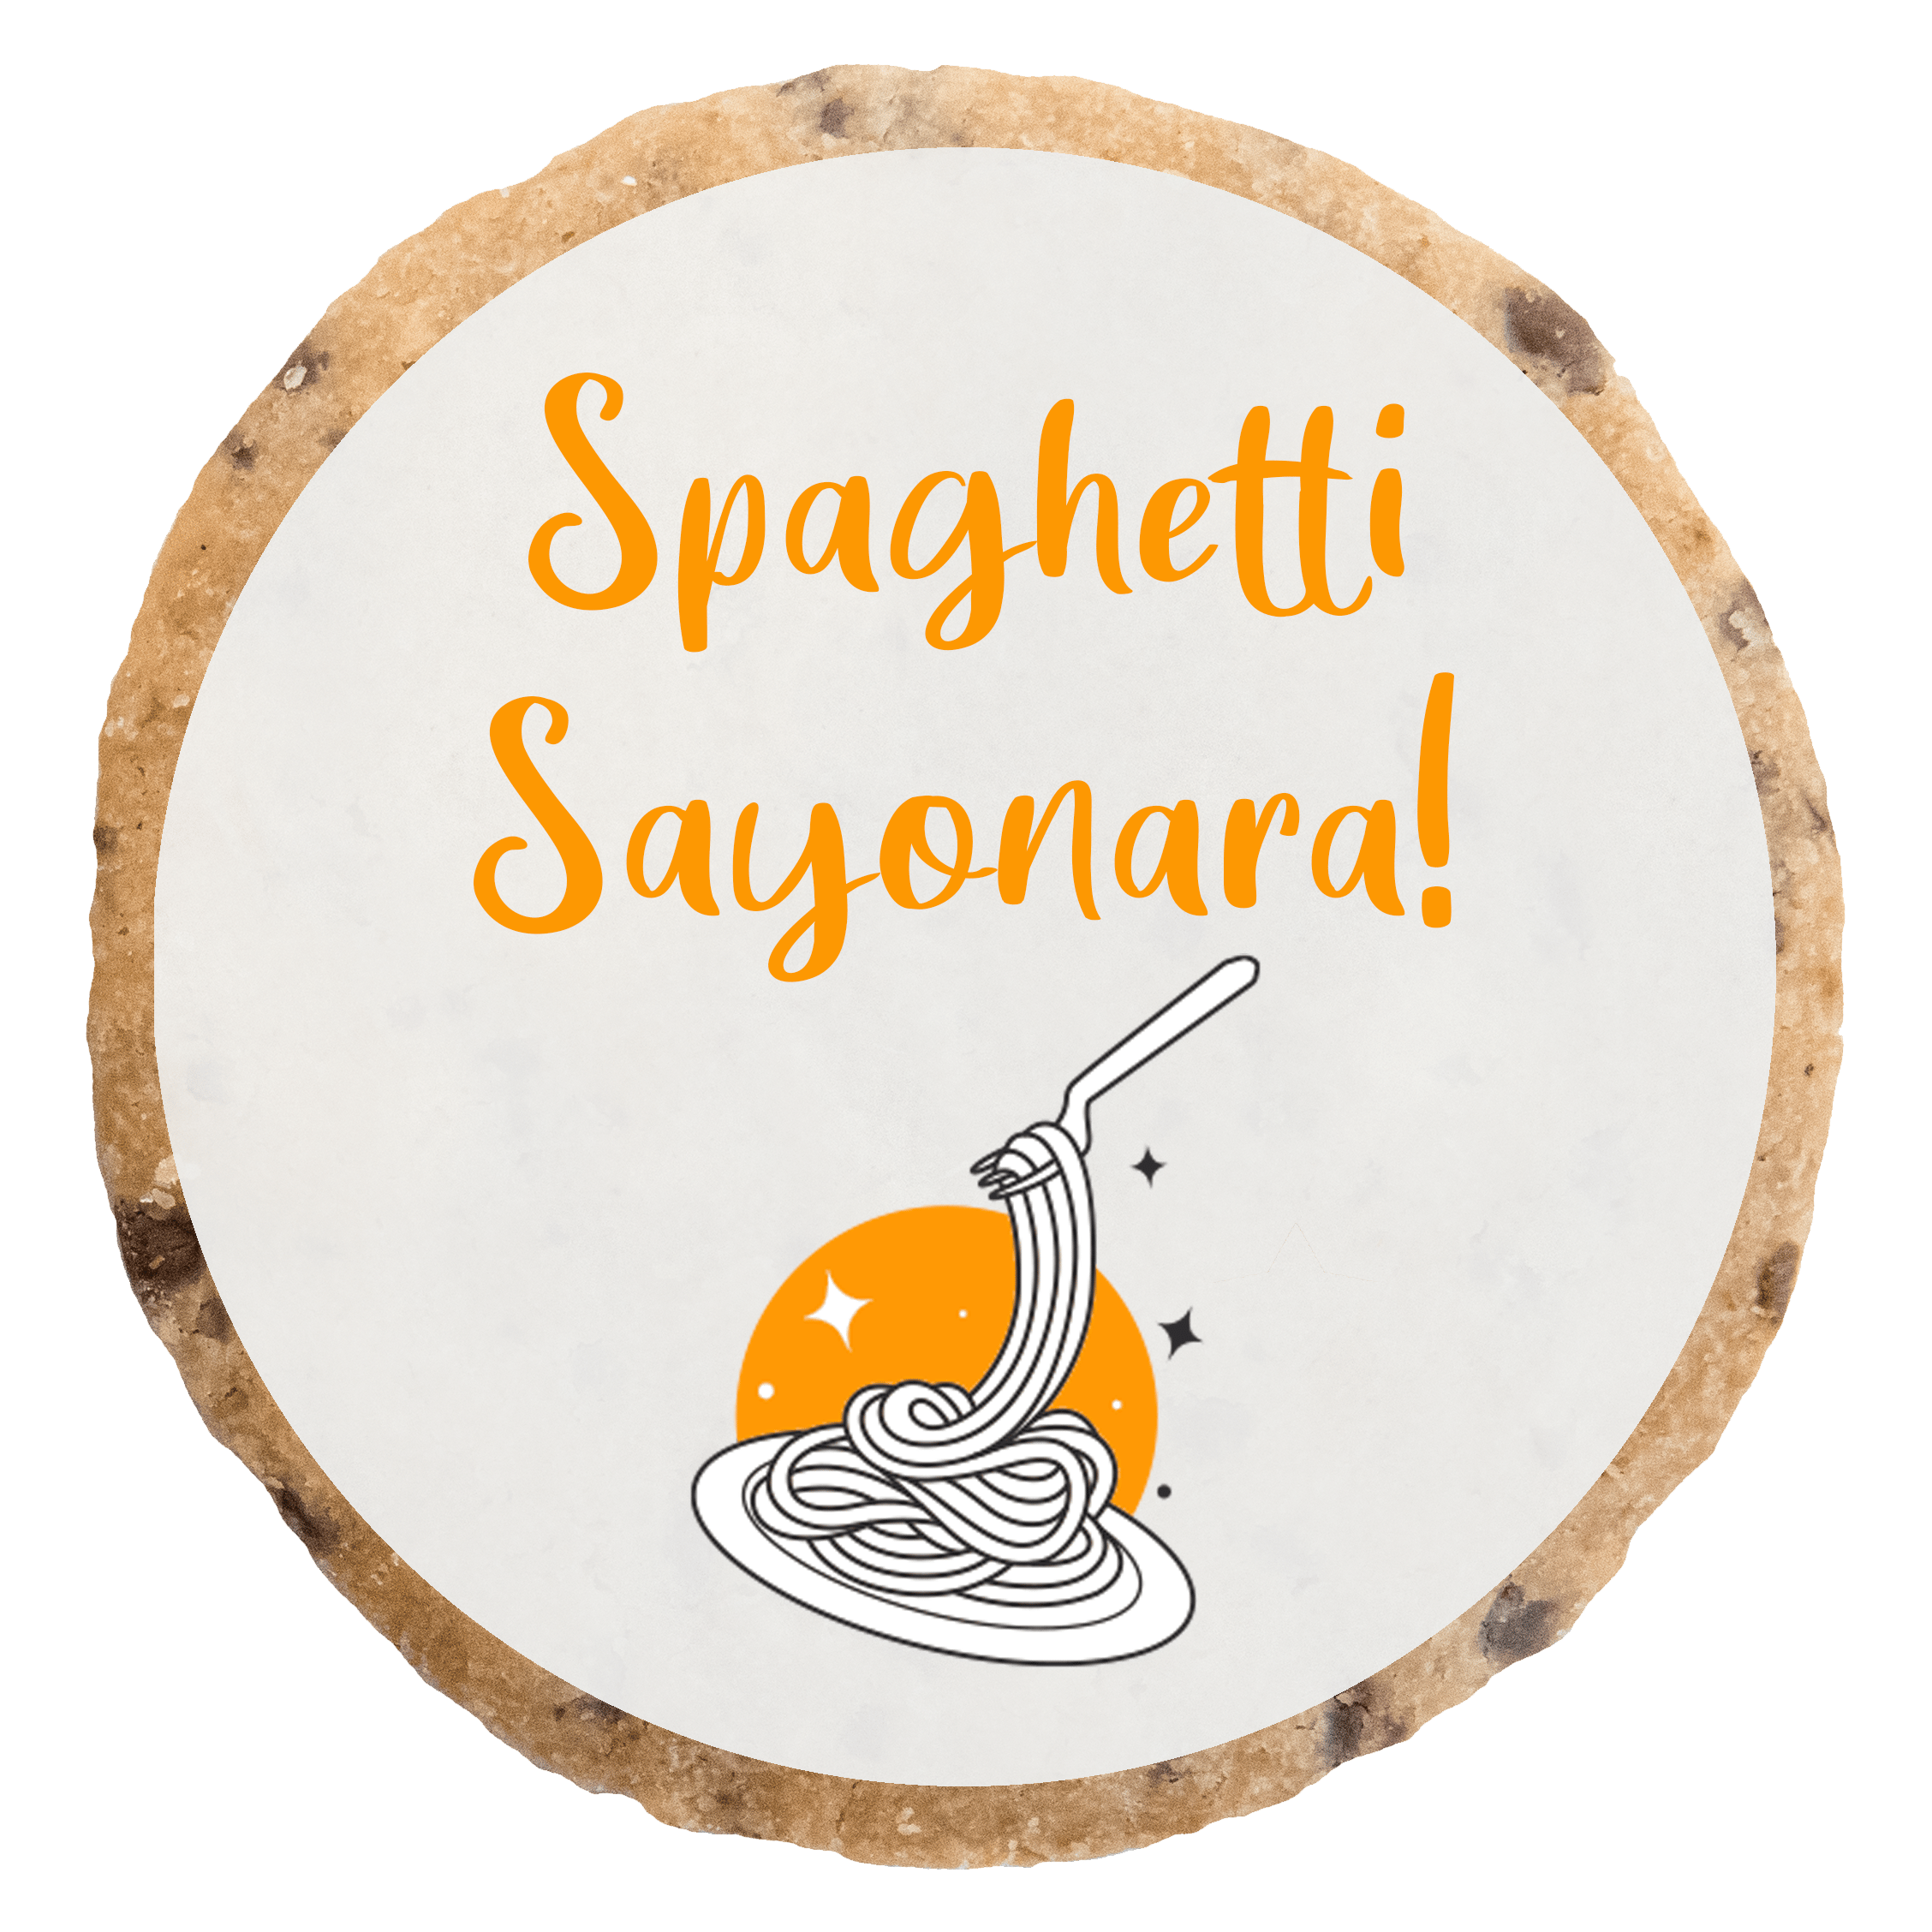 "Spaghetti Sayonara 2" MotivKEKS